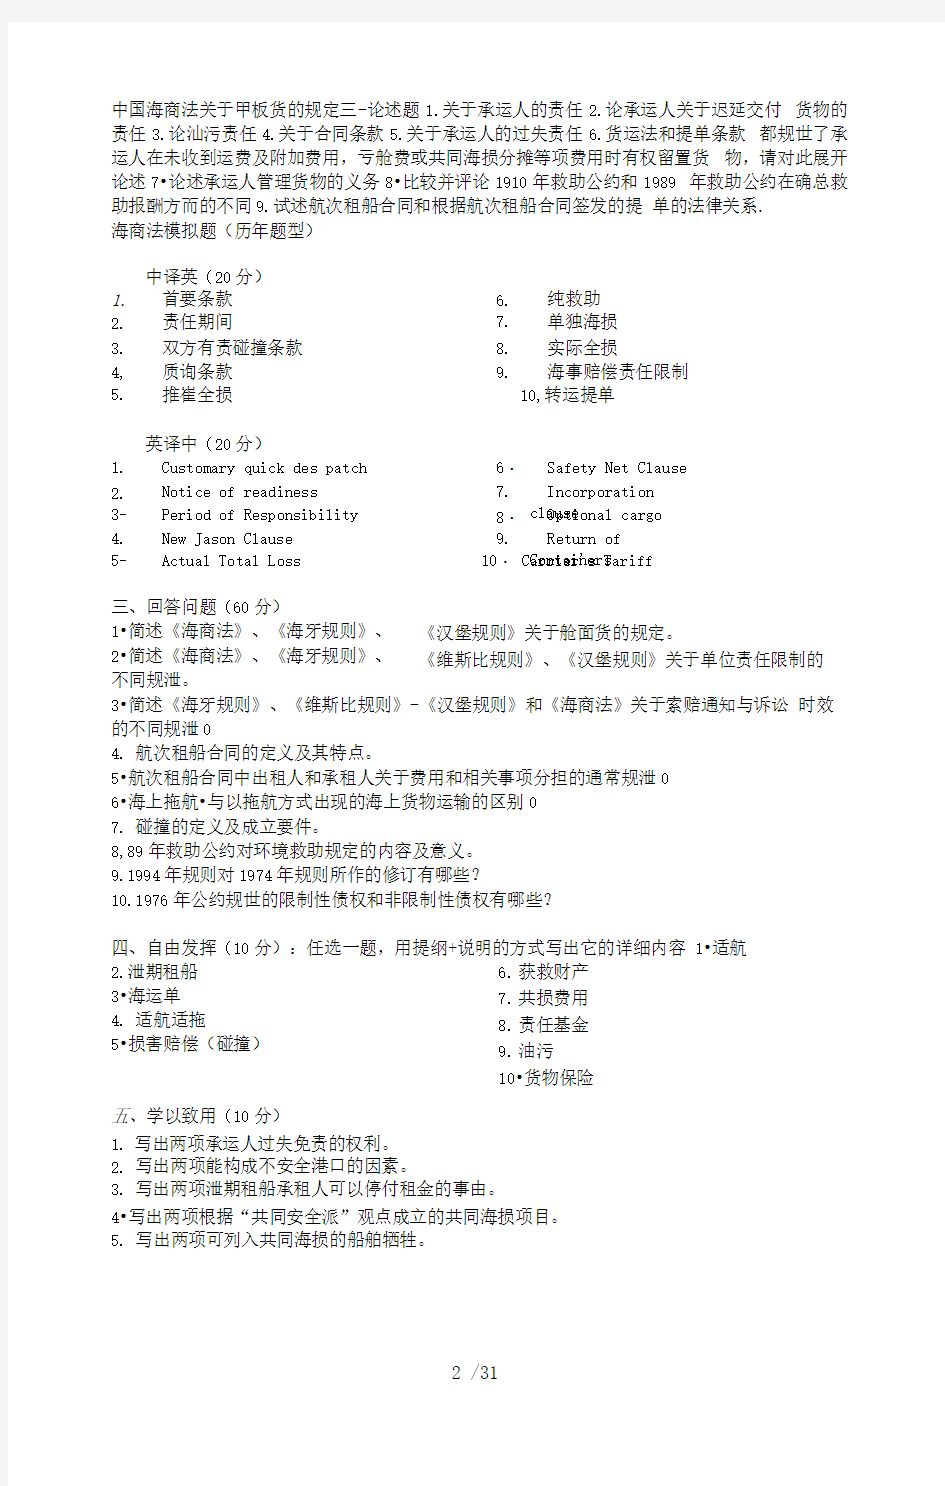 上海海事大学海商法研究中心题库有关专业考试中的各种公约